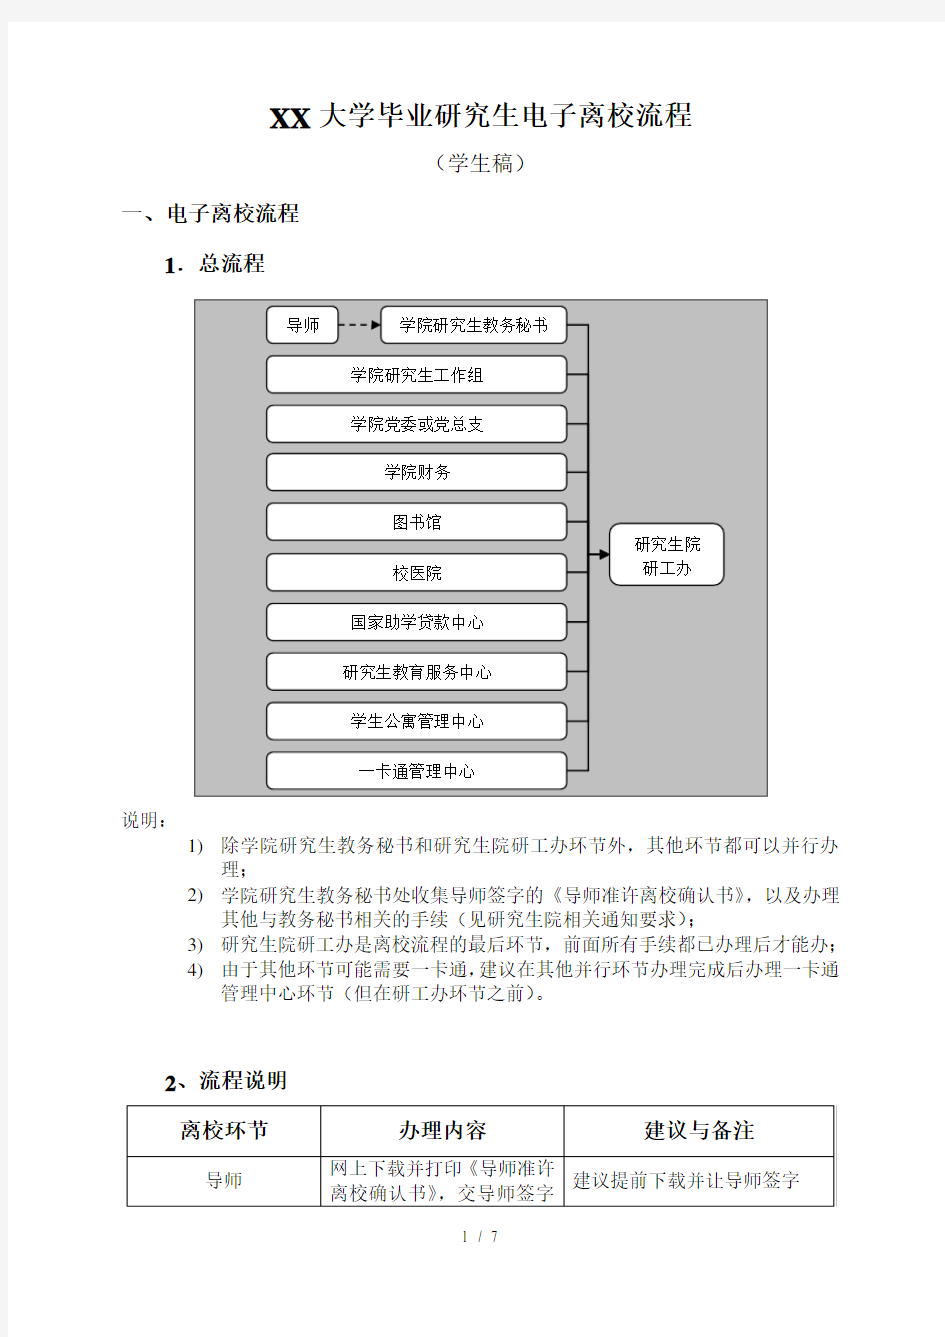 重庆大学毕业研究生网上离校流程 (1)